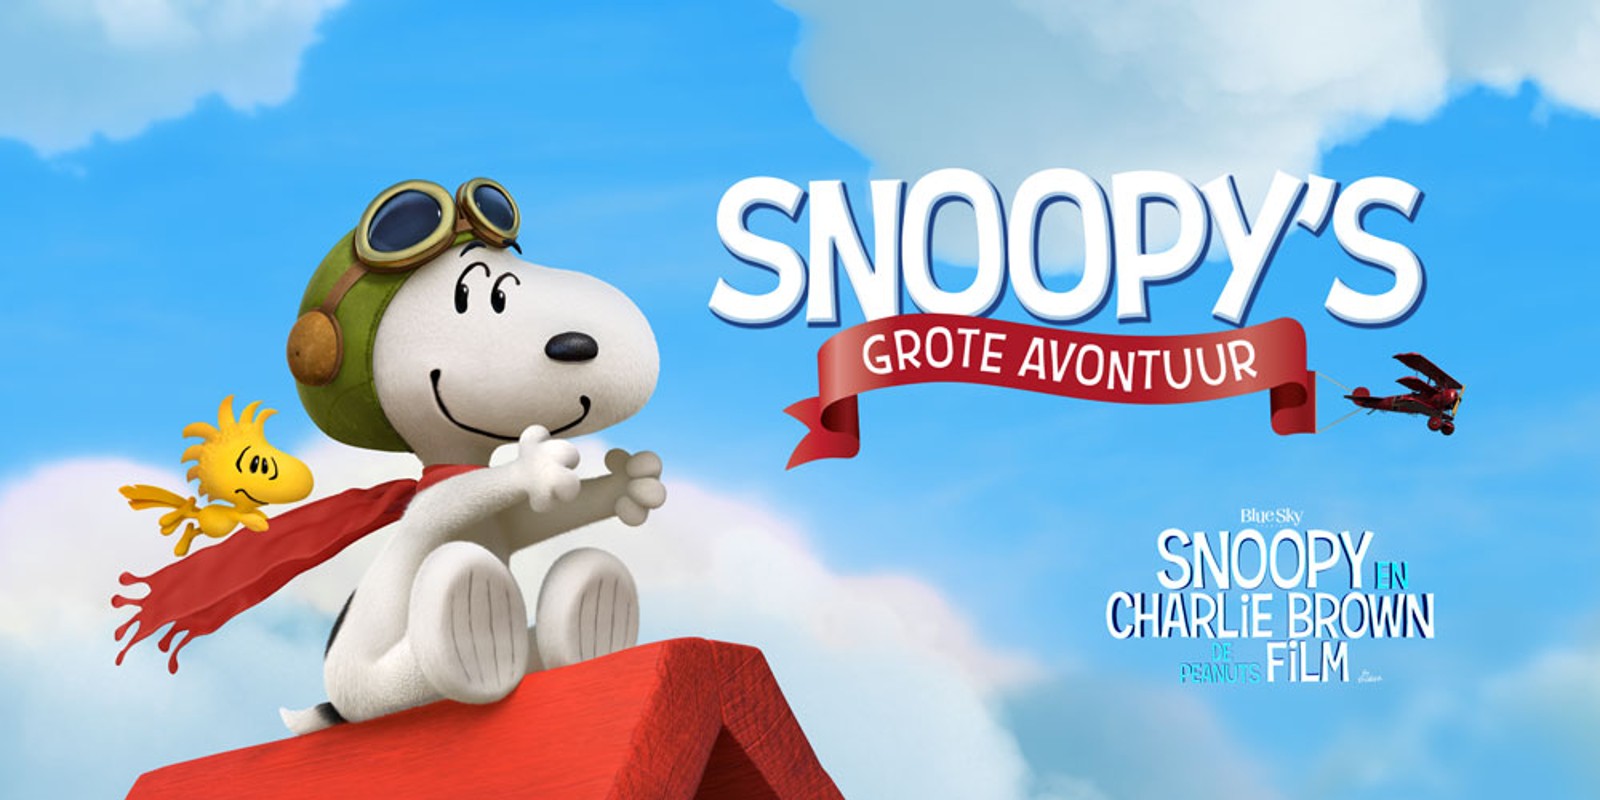 Snoopy en De Peanuts – De Film: Snoopy's grote avontuur